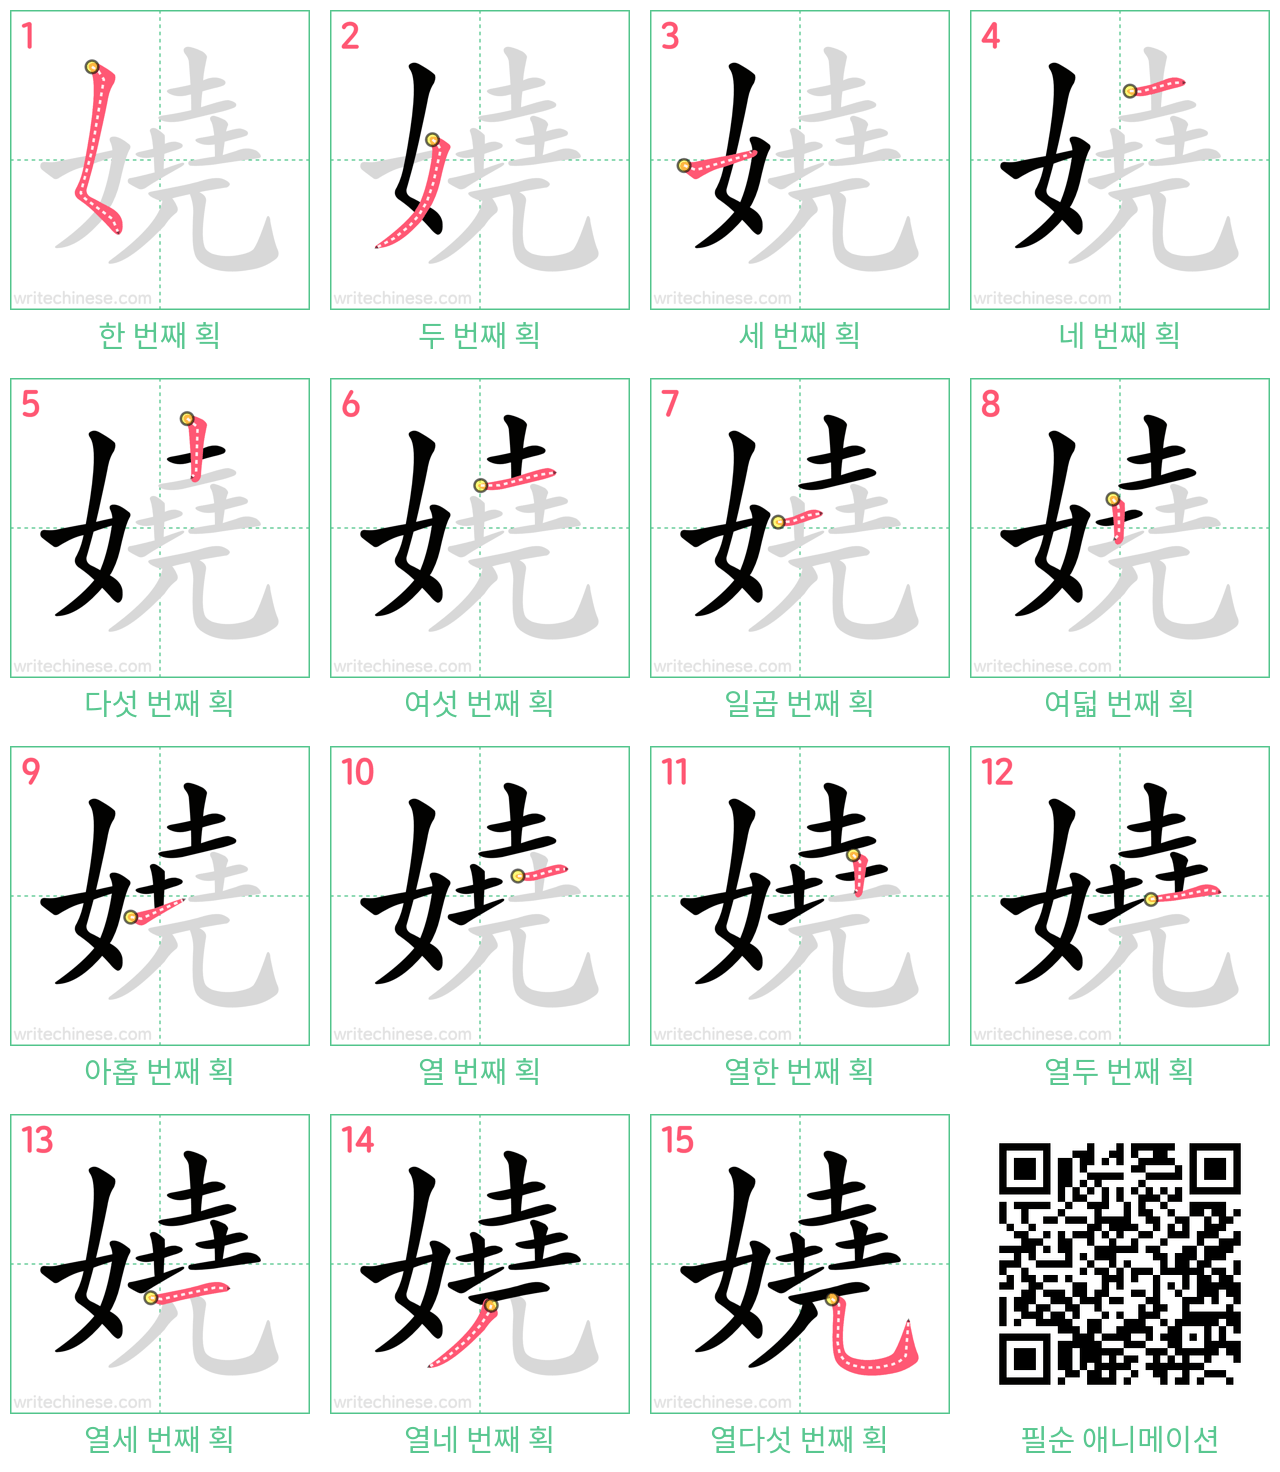 嬈 step-by-step stroke order diagrams